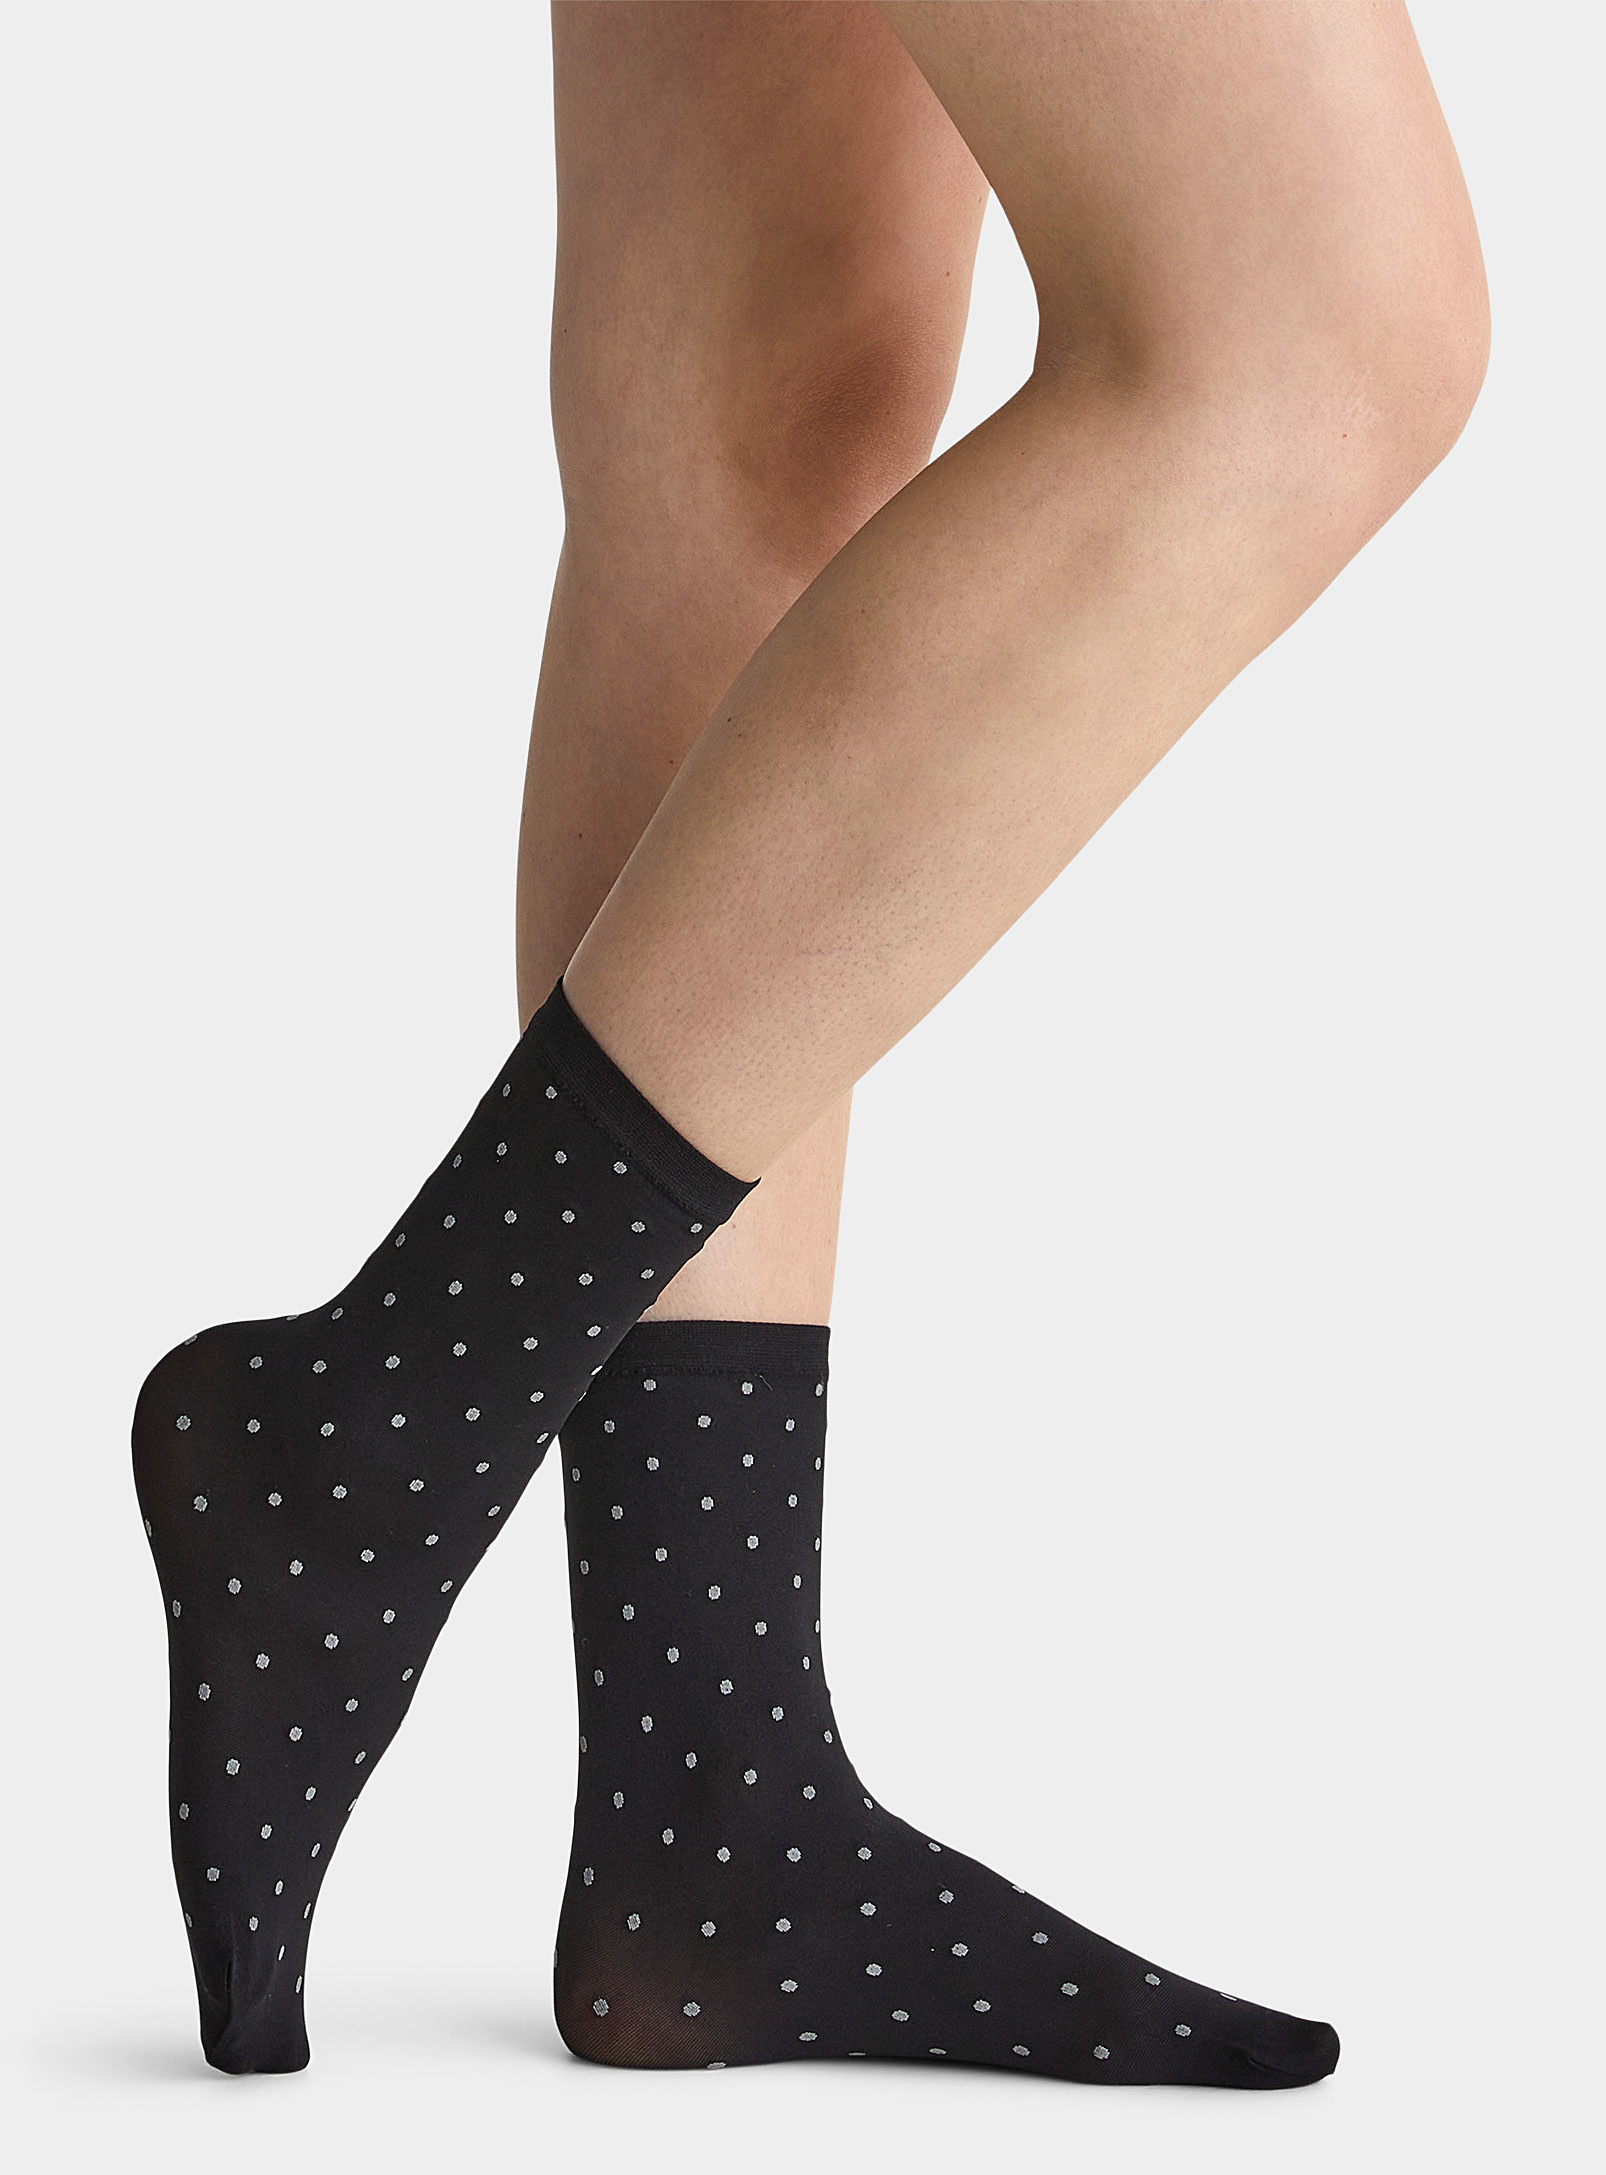 Simons - Women's Ash grey dot ankle socks Set of 2